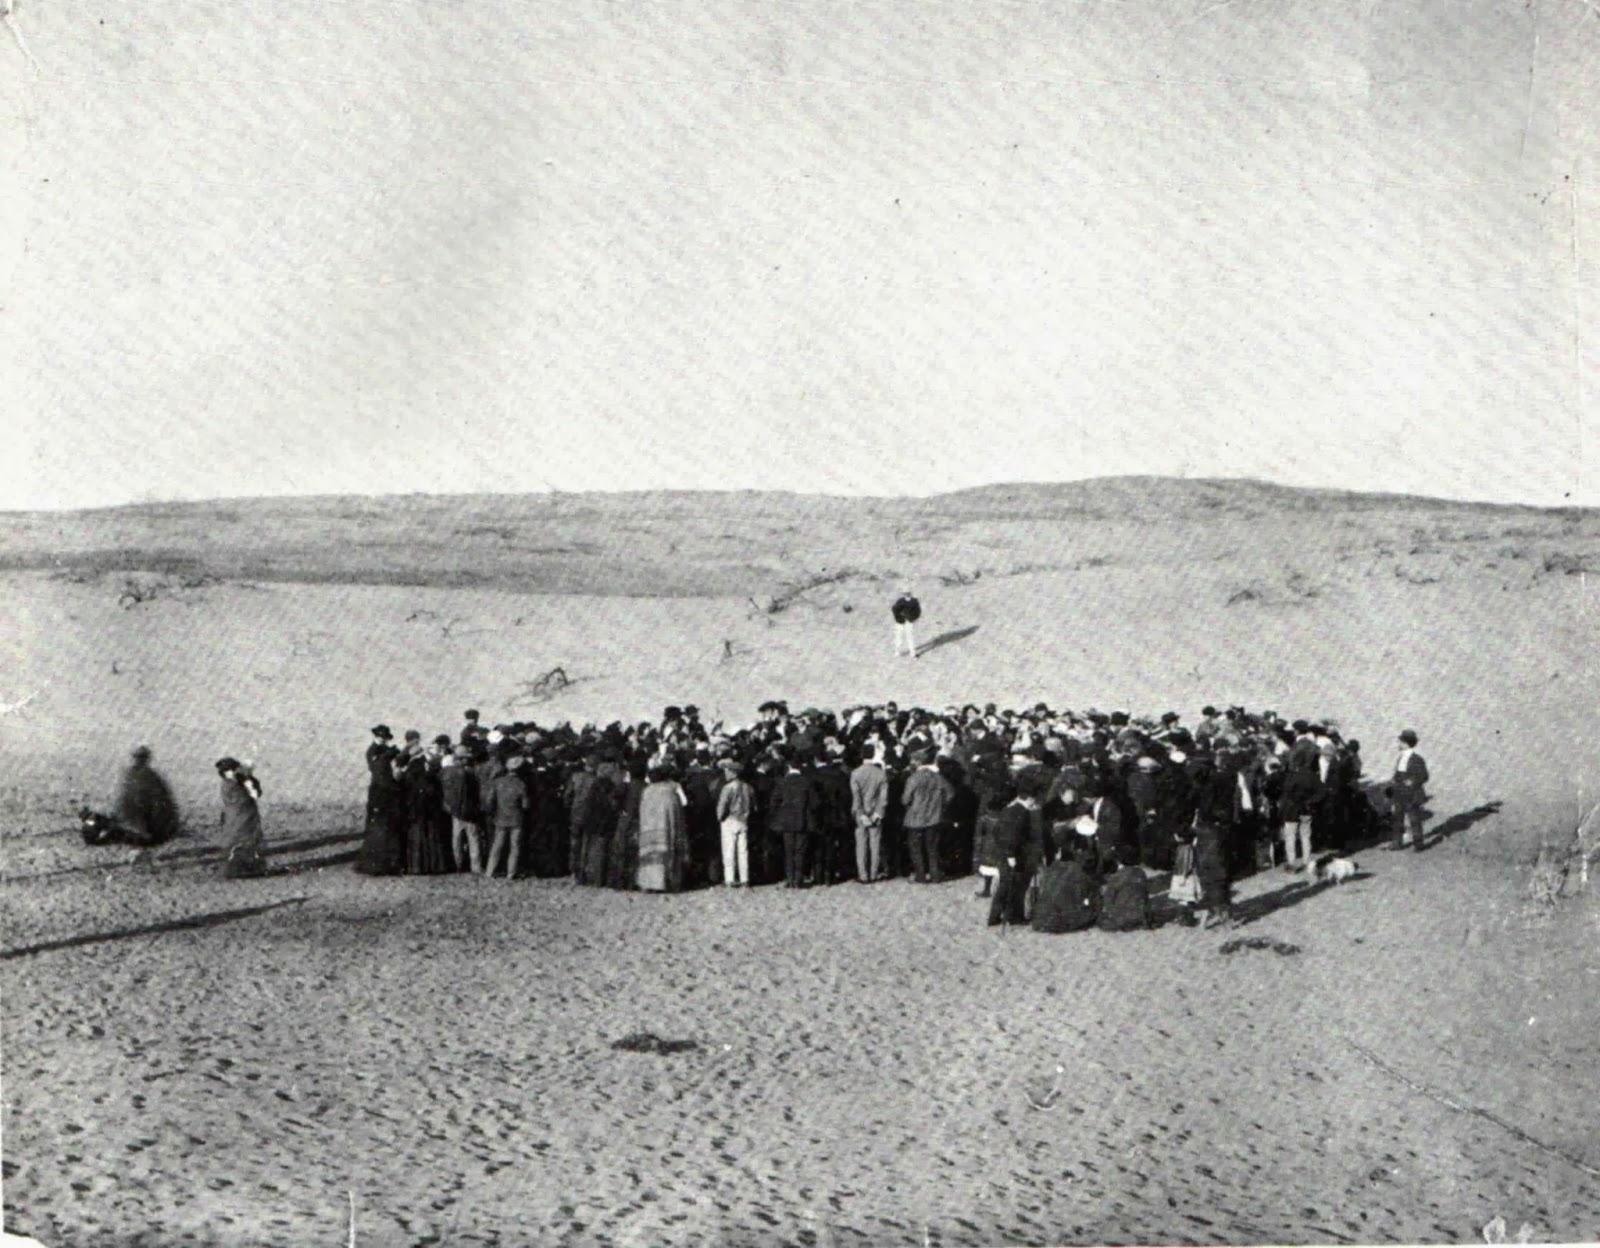 Environ 100 personnes de participer à une loterie pour diviser un 12 acres de terrain de dunes de sable, qui deviendra plus tard la ville de Tel-Aviv, 1909